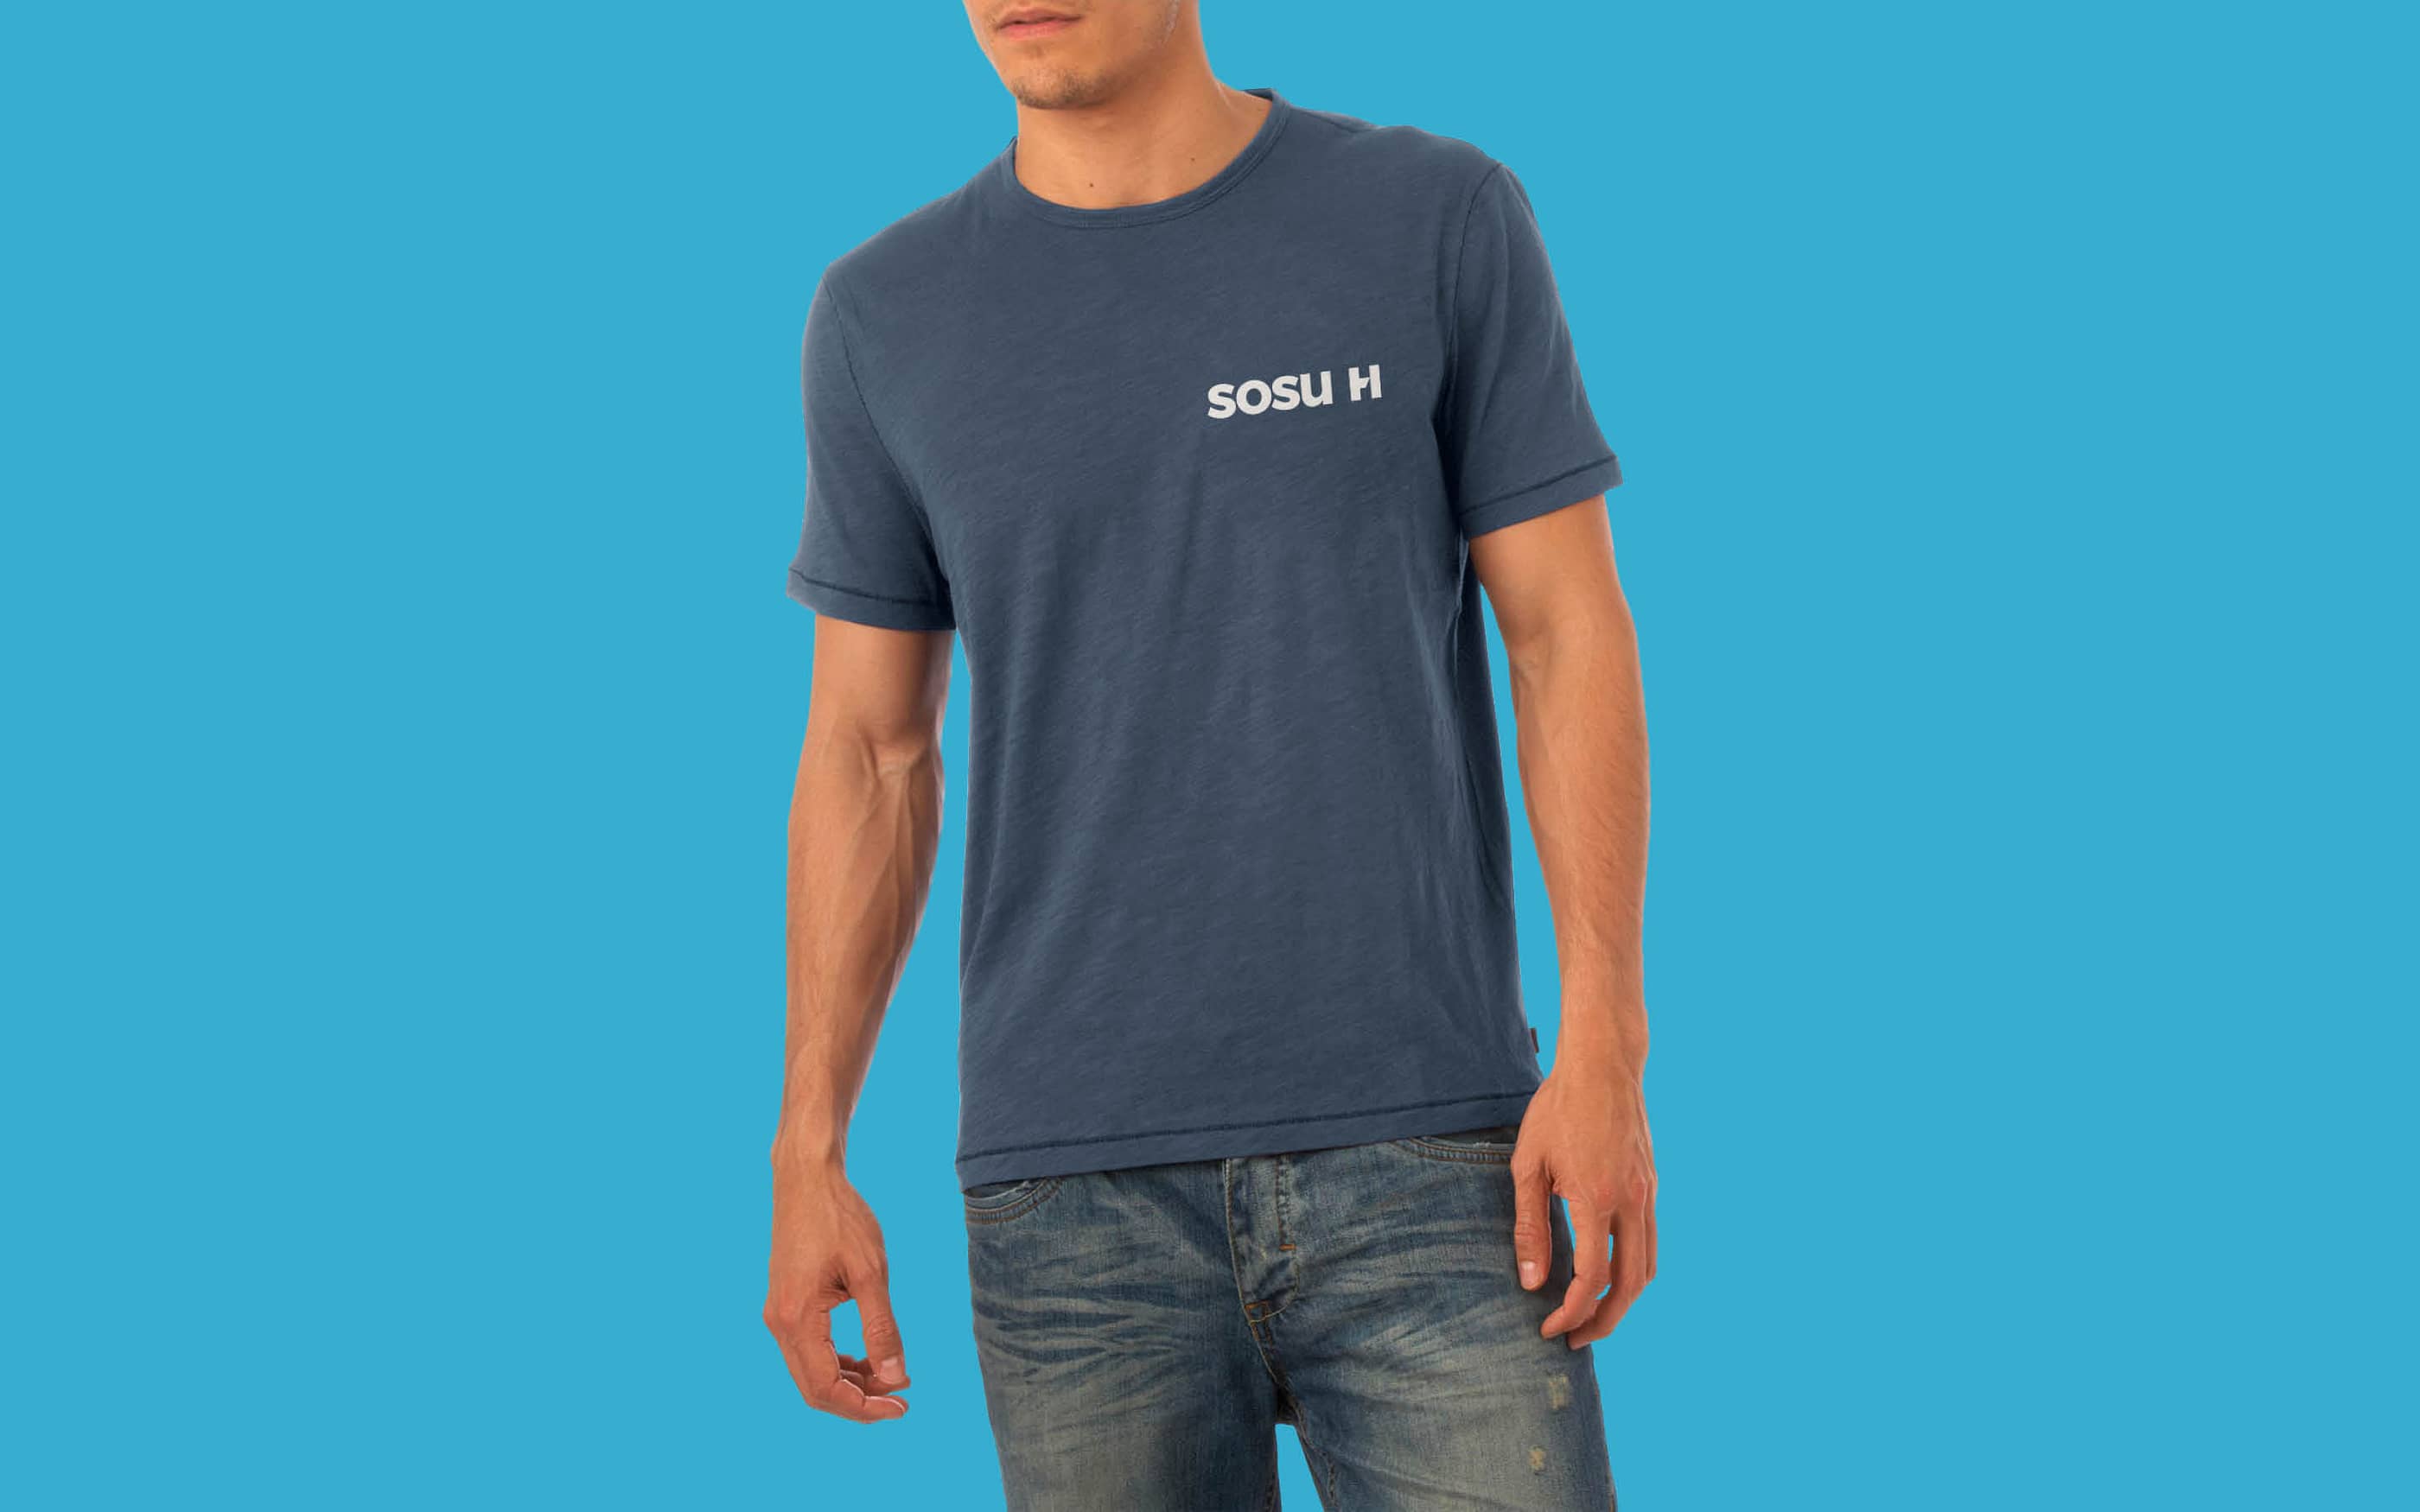 Eksempel på t-shirt som del af designmanual for SOSU H